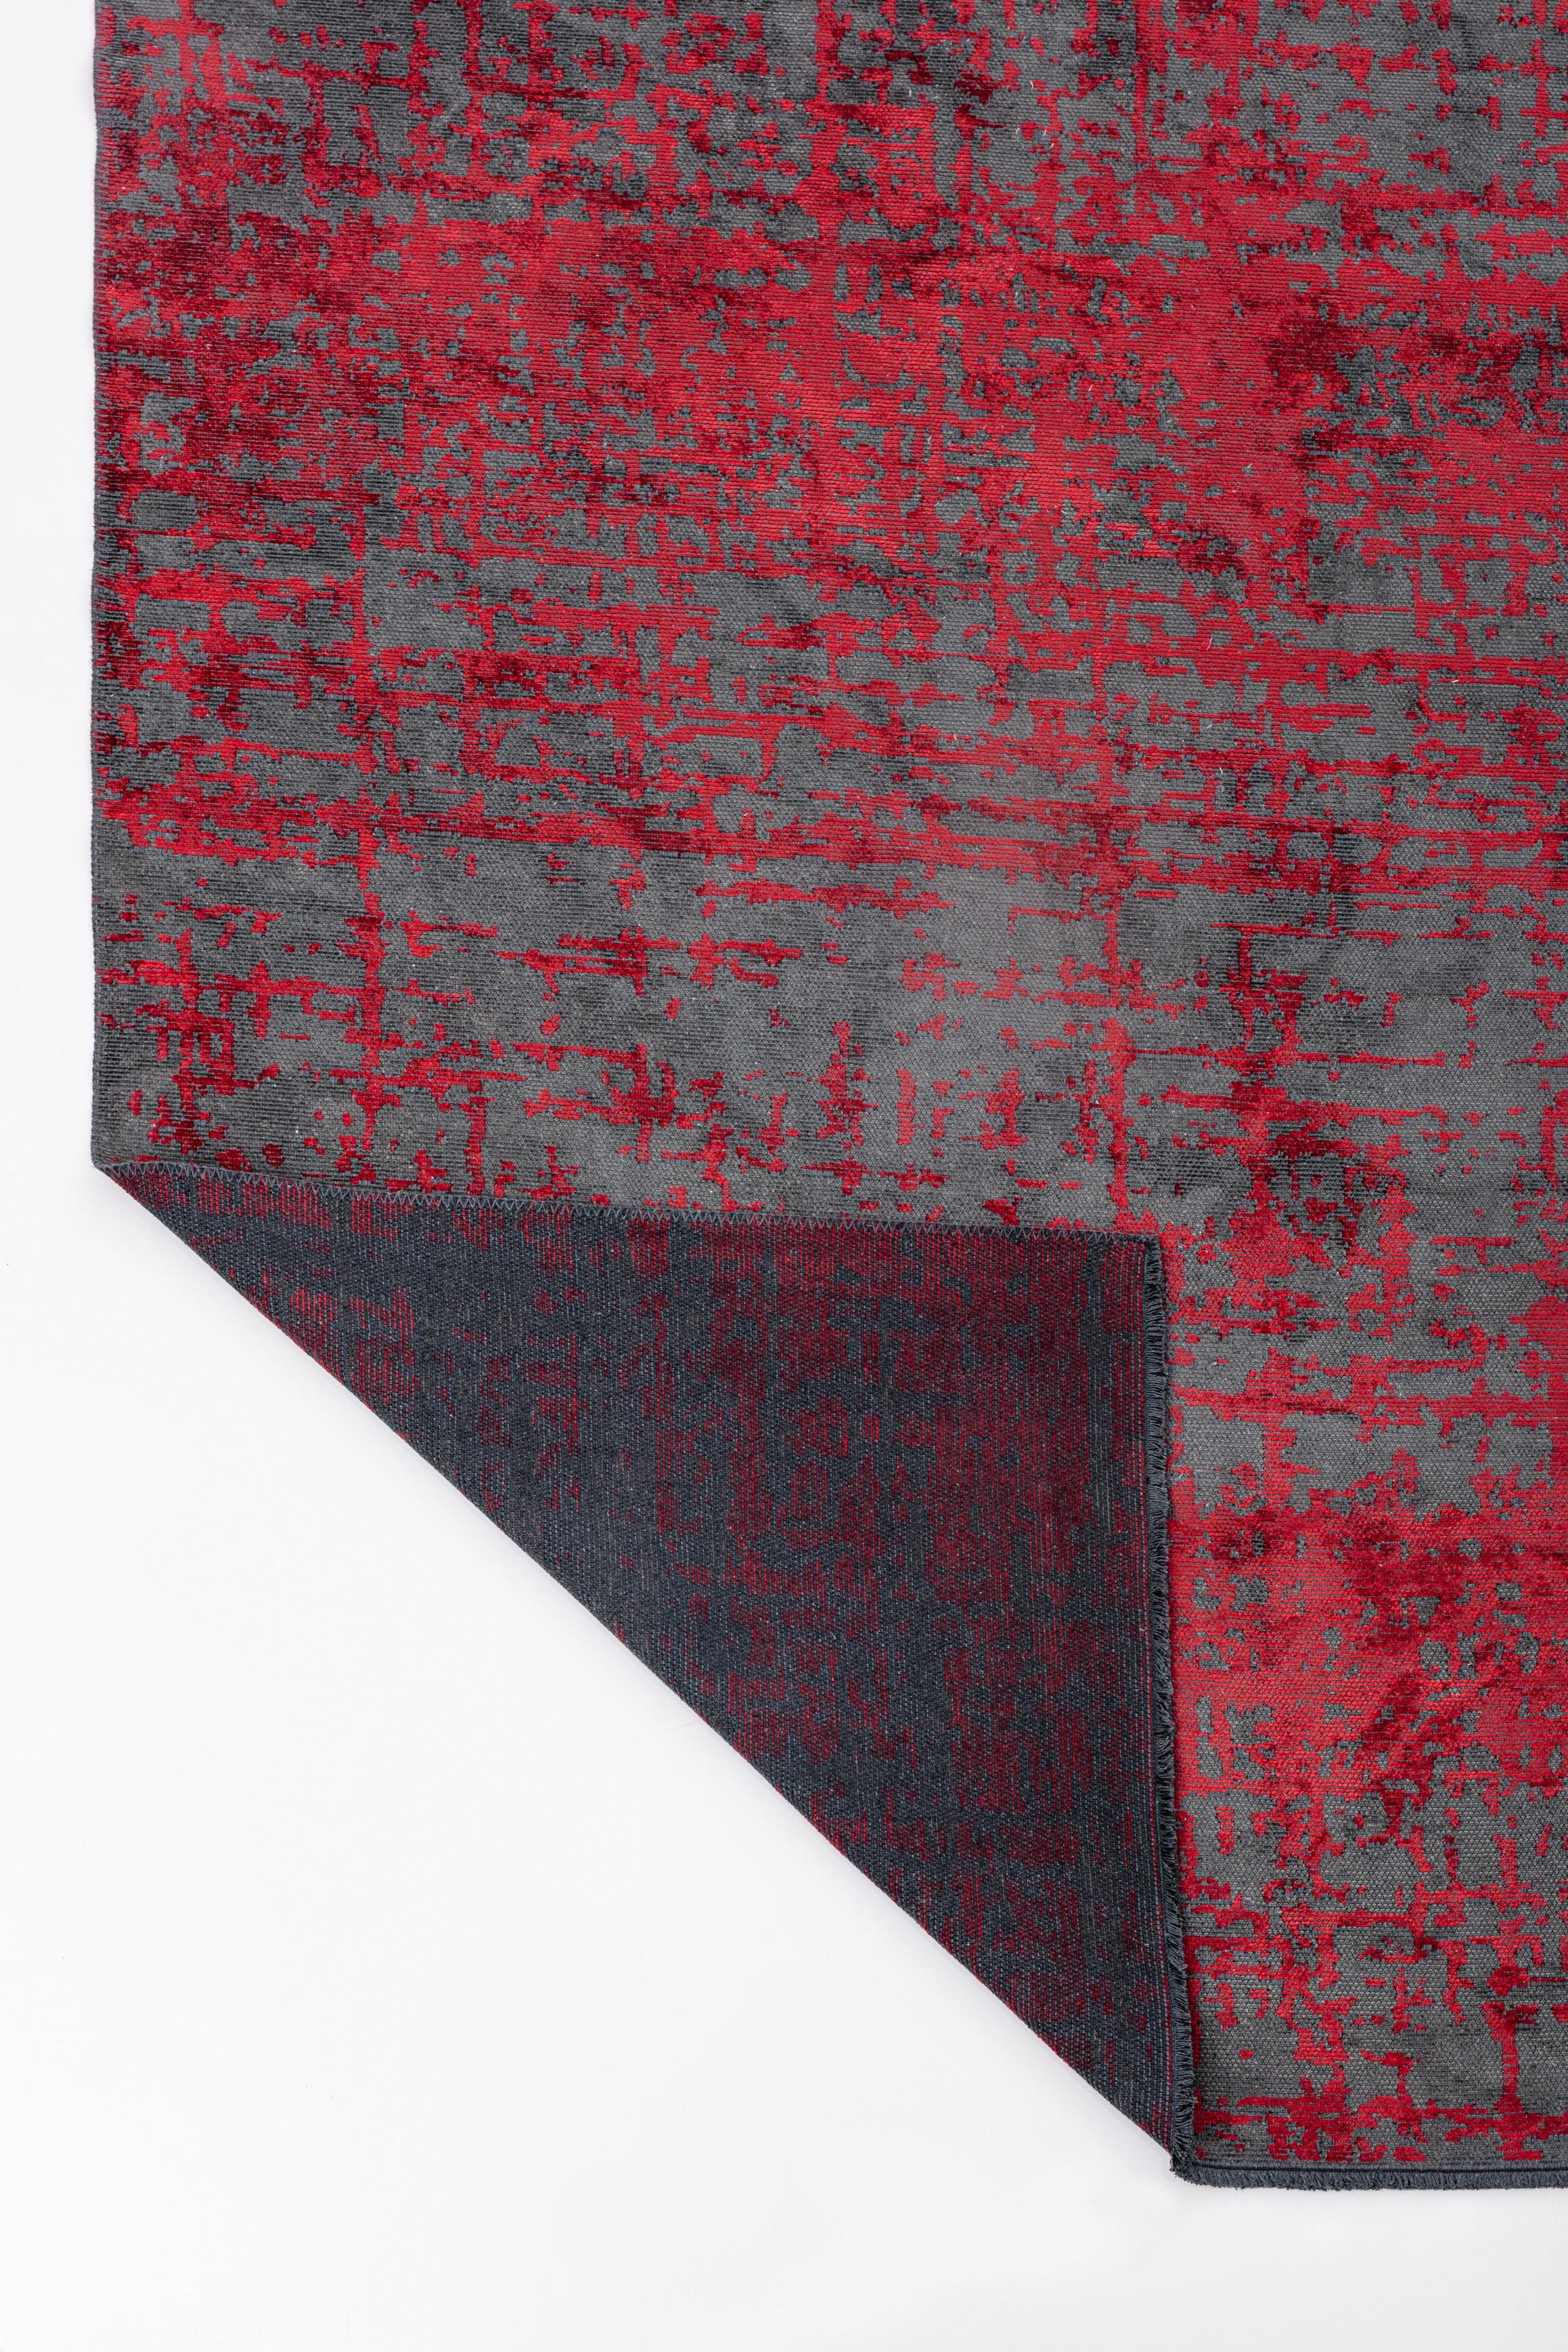 En vente :  (Rouge) Tapis de sol Moderns Abstract Luxury, fini à la main 3